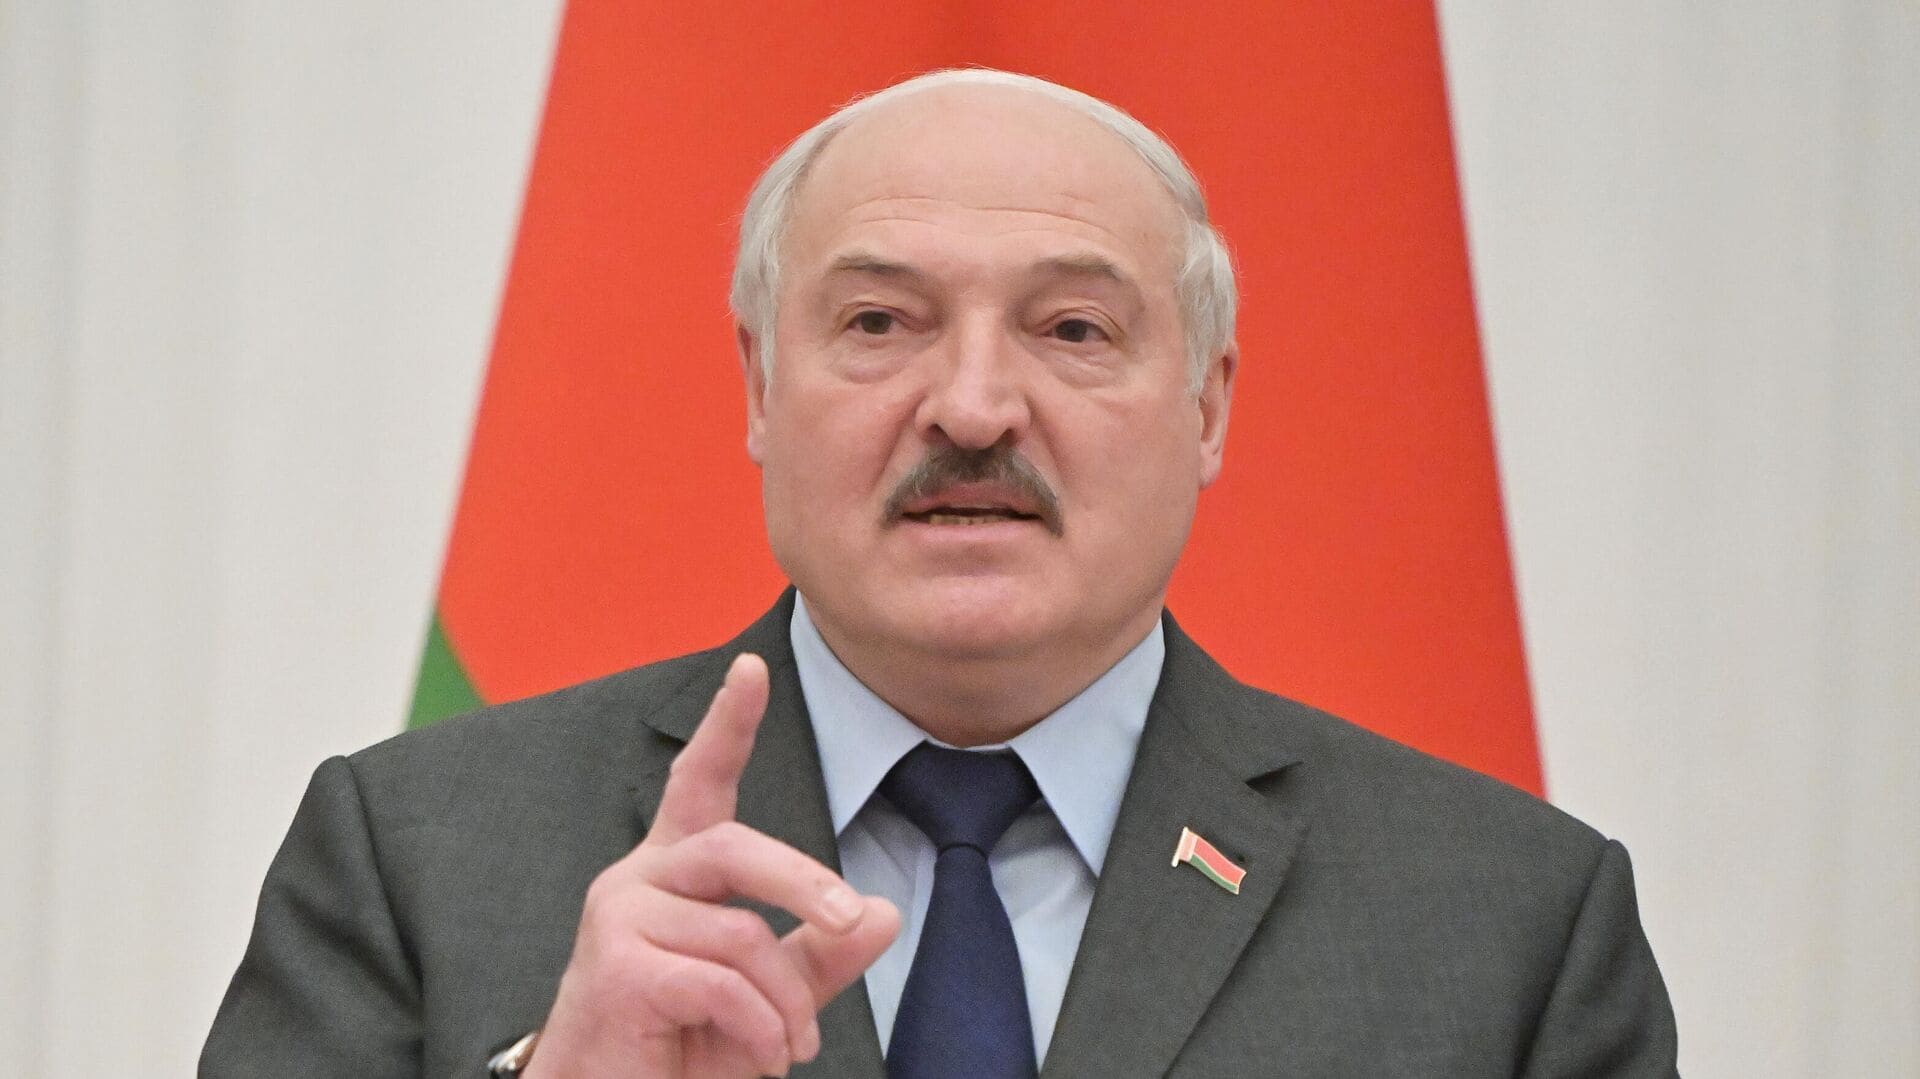 Лукашенко вперше визнав участь білорусі у війні в Україні, «але ми нікого не вбиваємо» (відео)